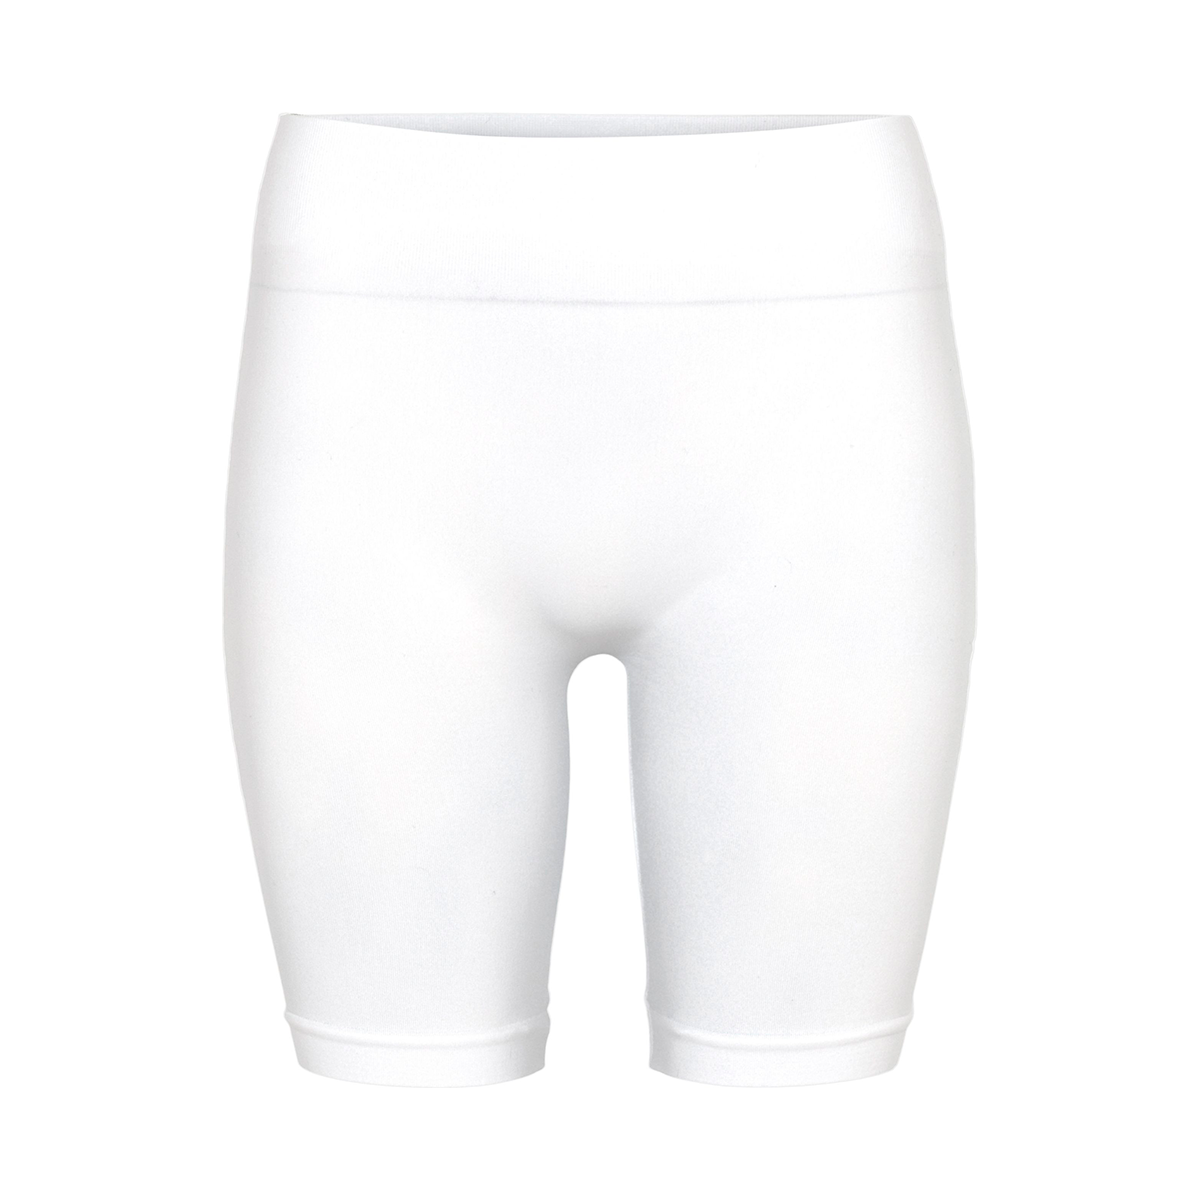 7: Decoy Seamless Shorts, Farve: Hvid, Størrelse: S/M, Dame